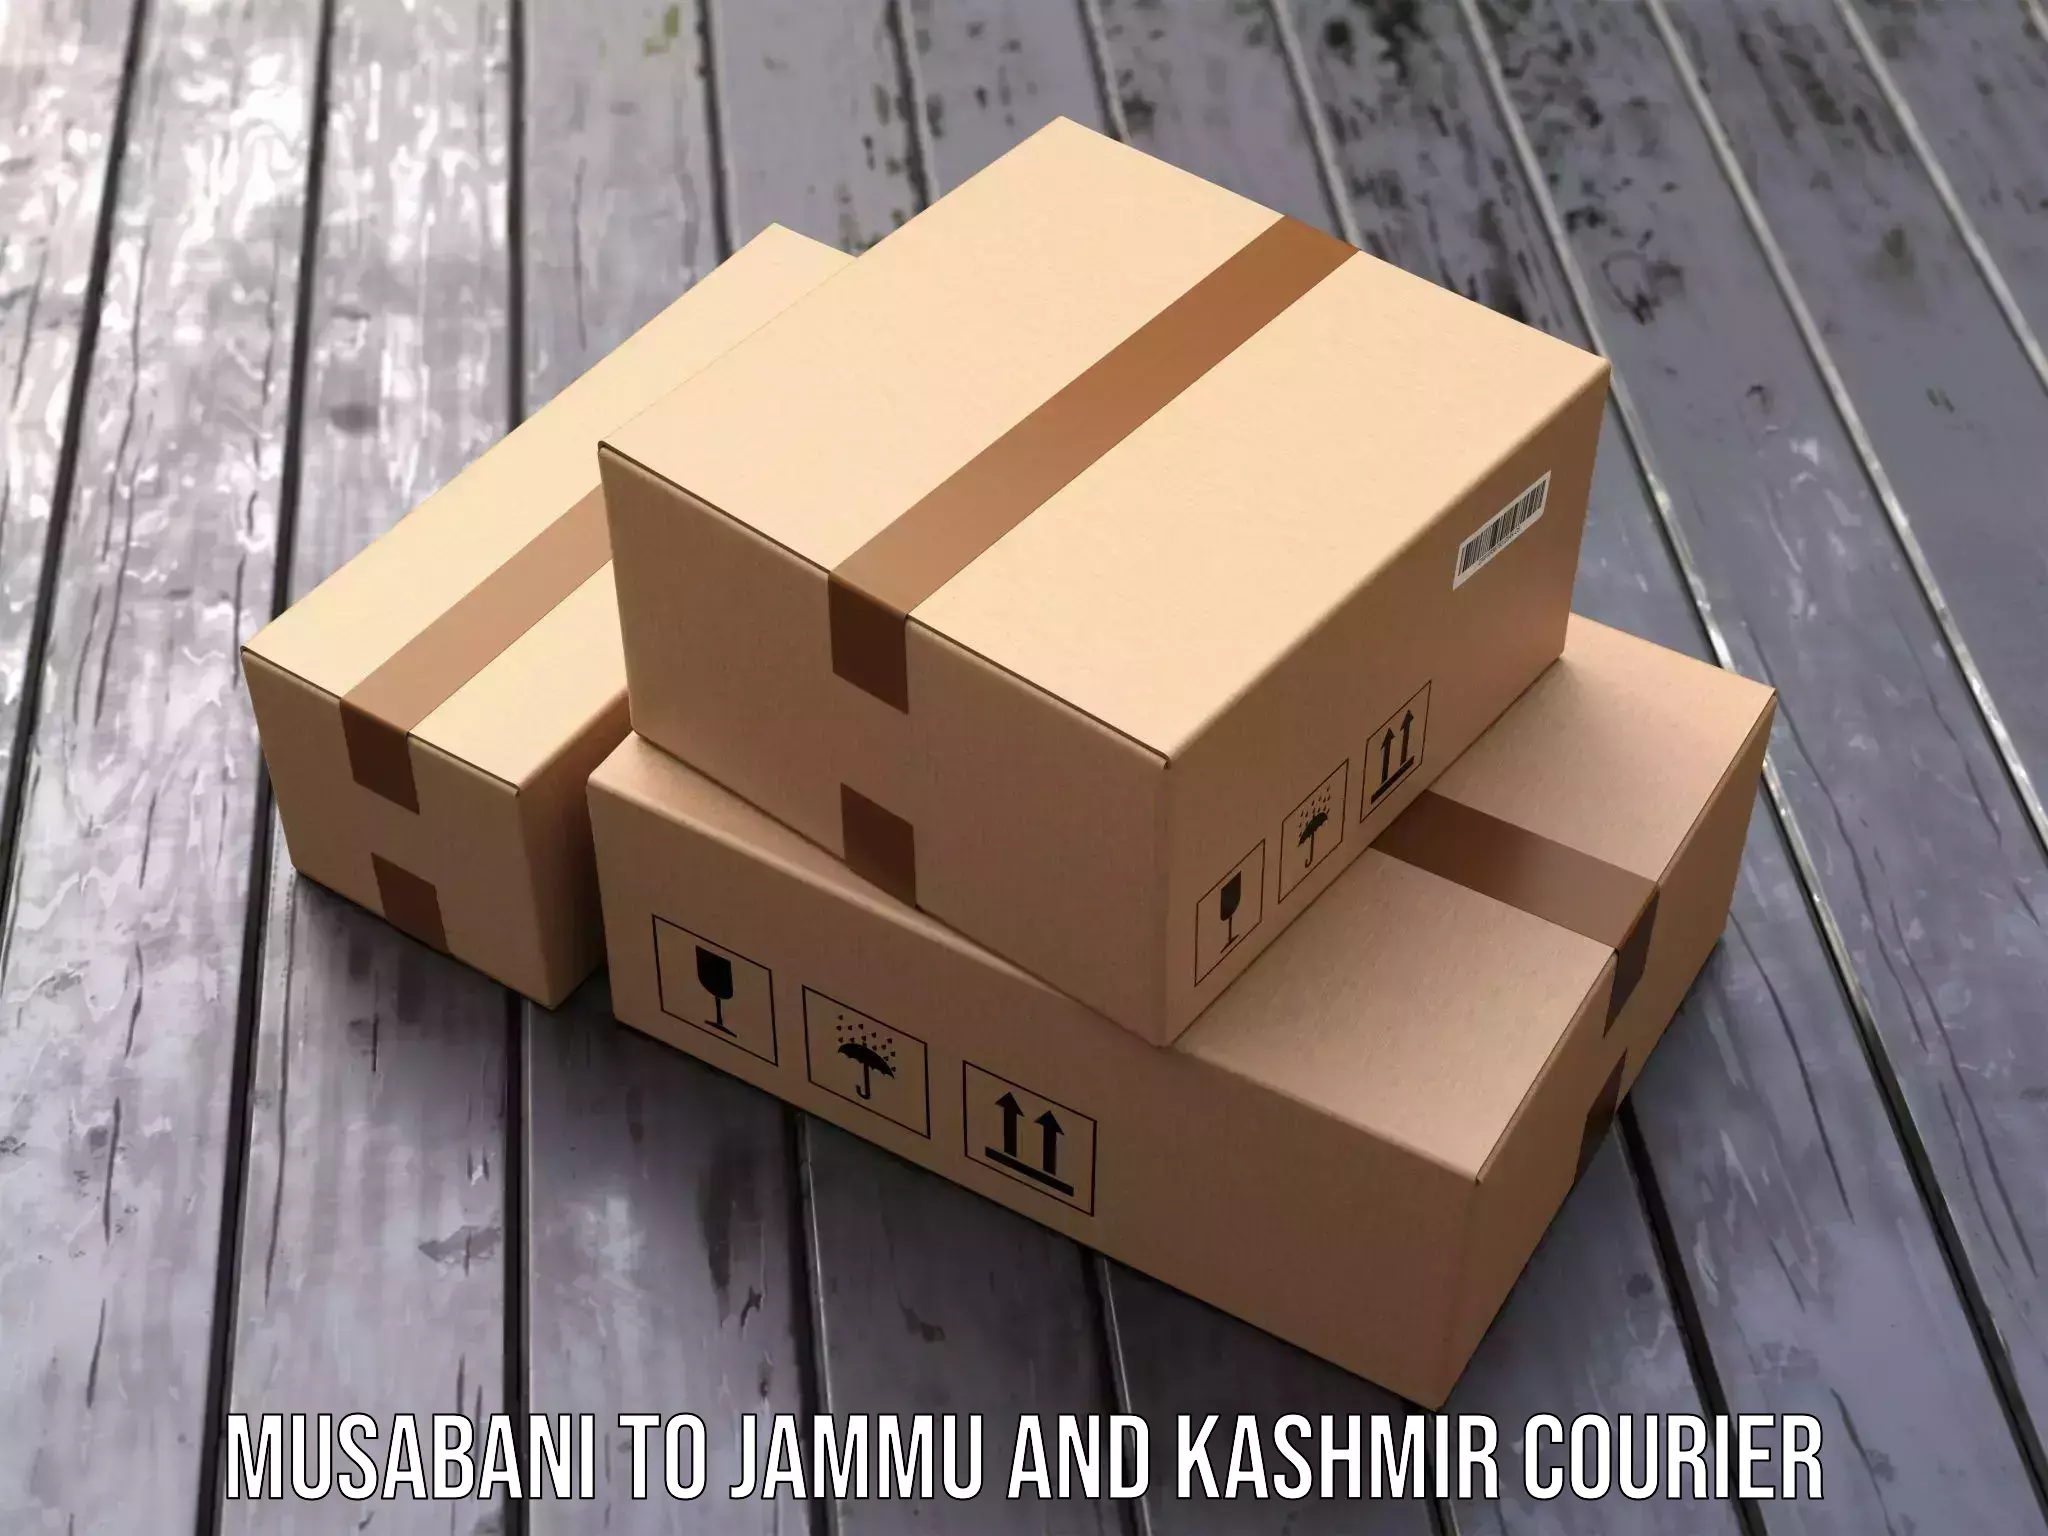 Quick dispatch service Musabani to Jammu and Kashmir